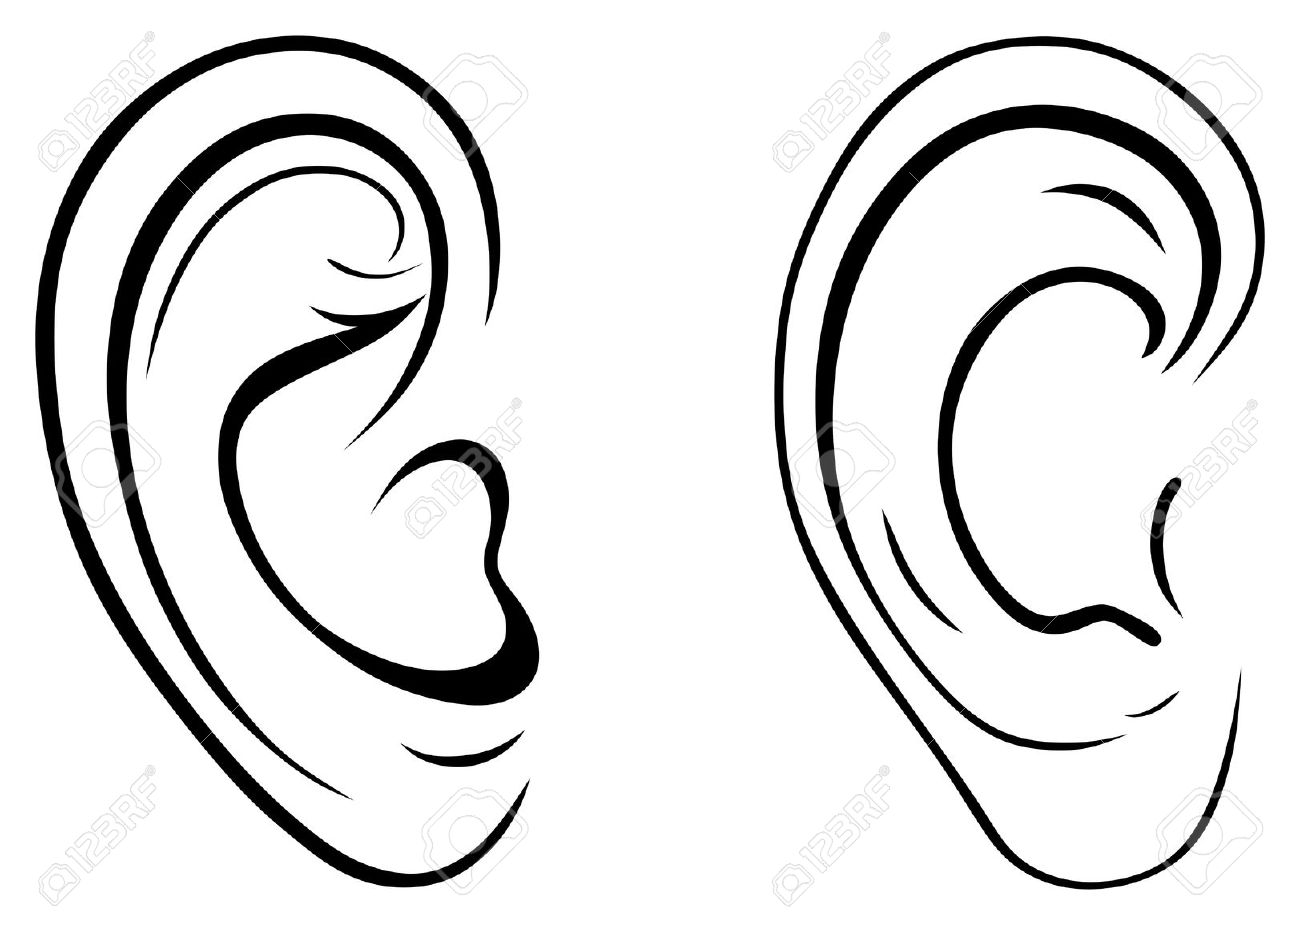 free clip art of an ear - photo #13